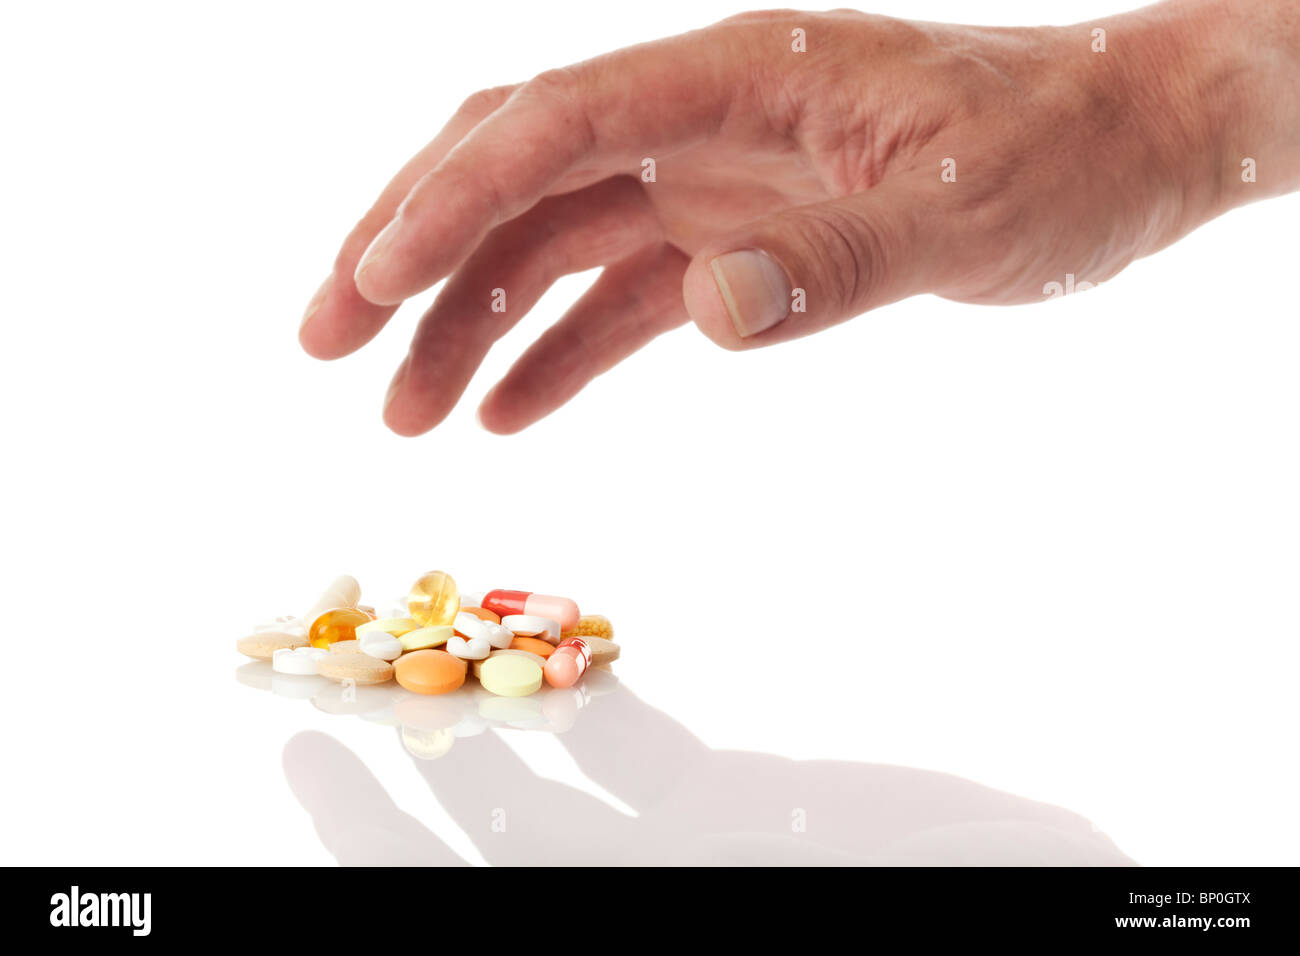 El uso indebido de drogas - mano llegando a un montón de medicina pills Foto de stock